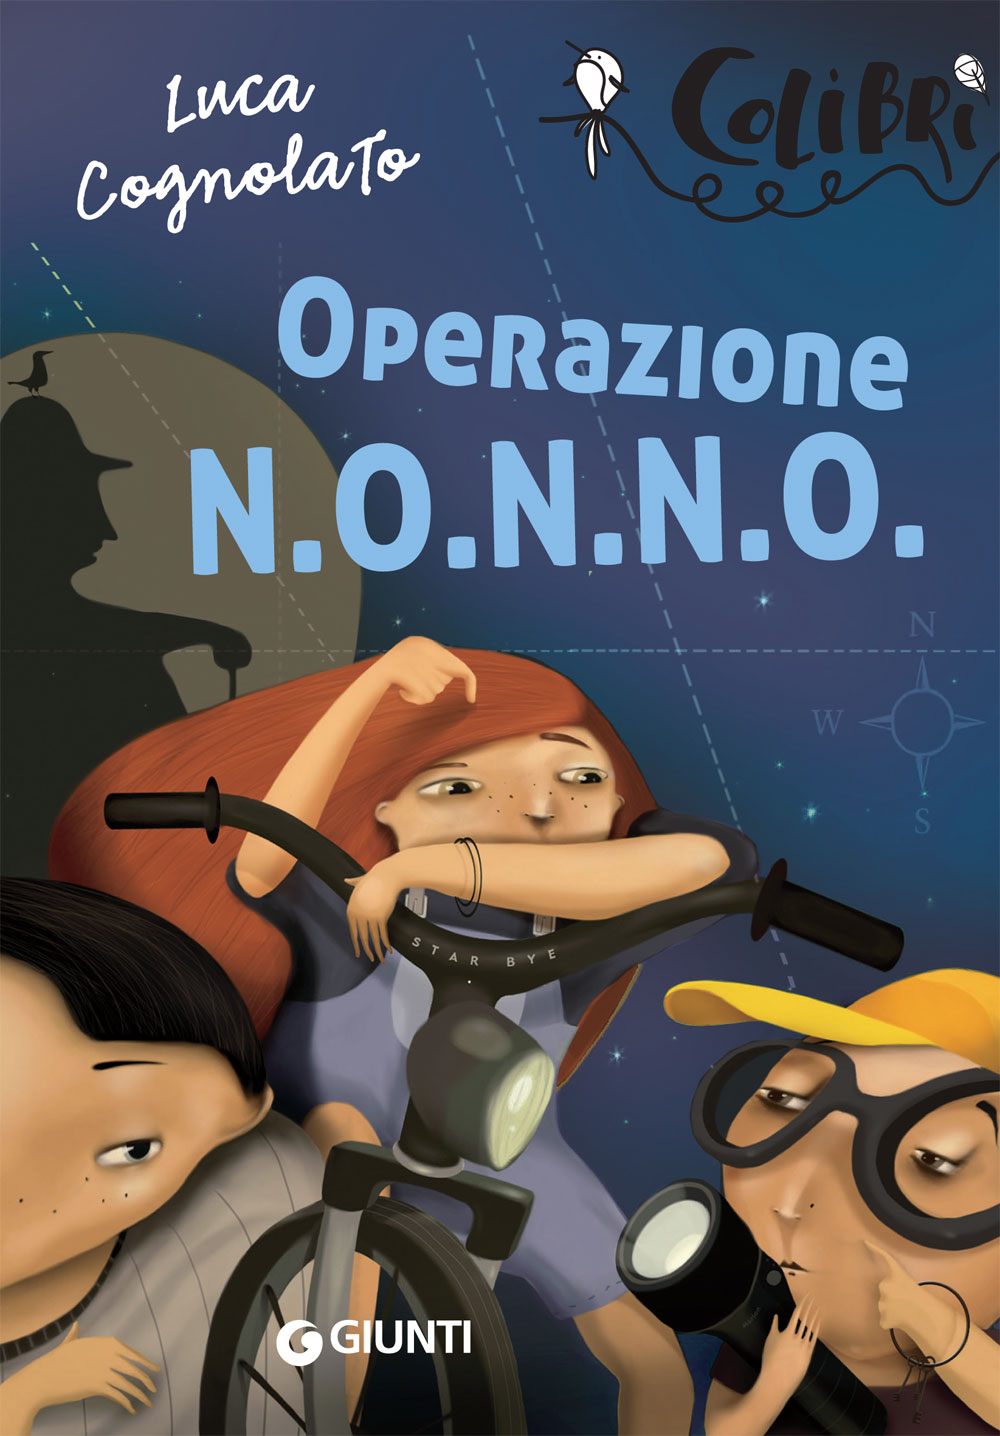 Operazione N.O.N.N.O.